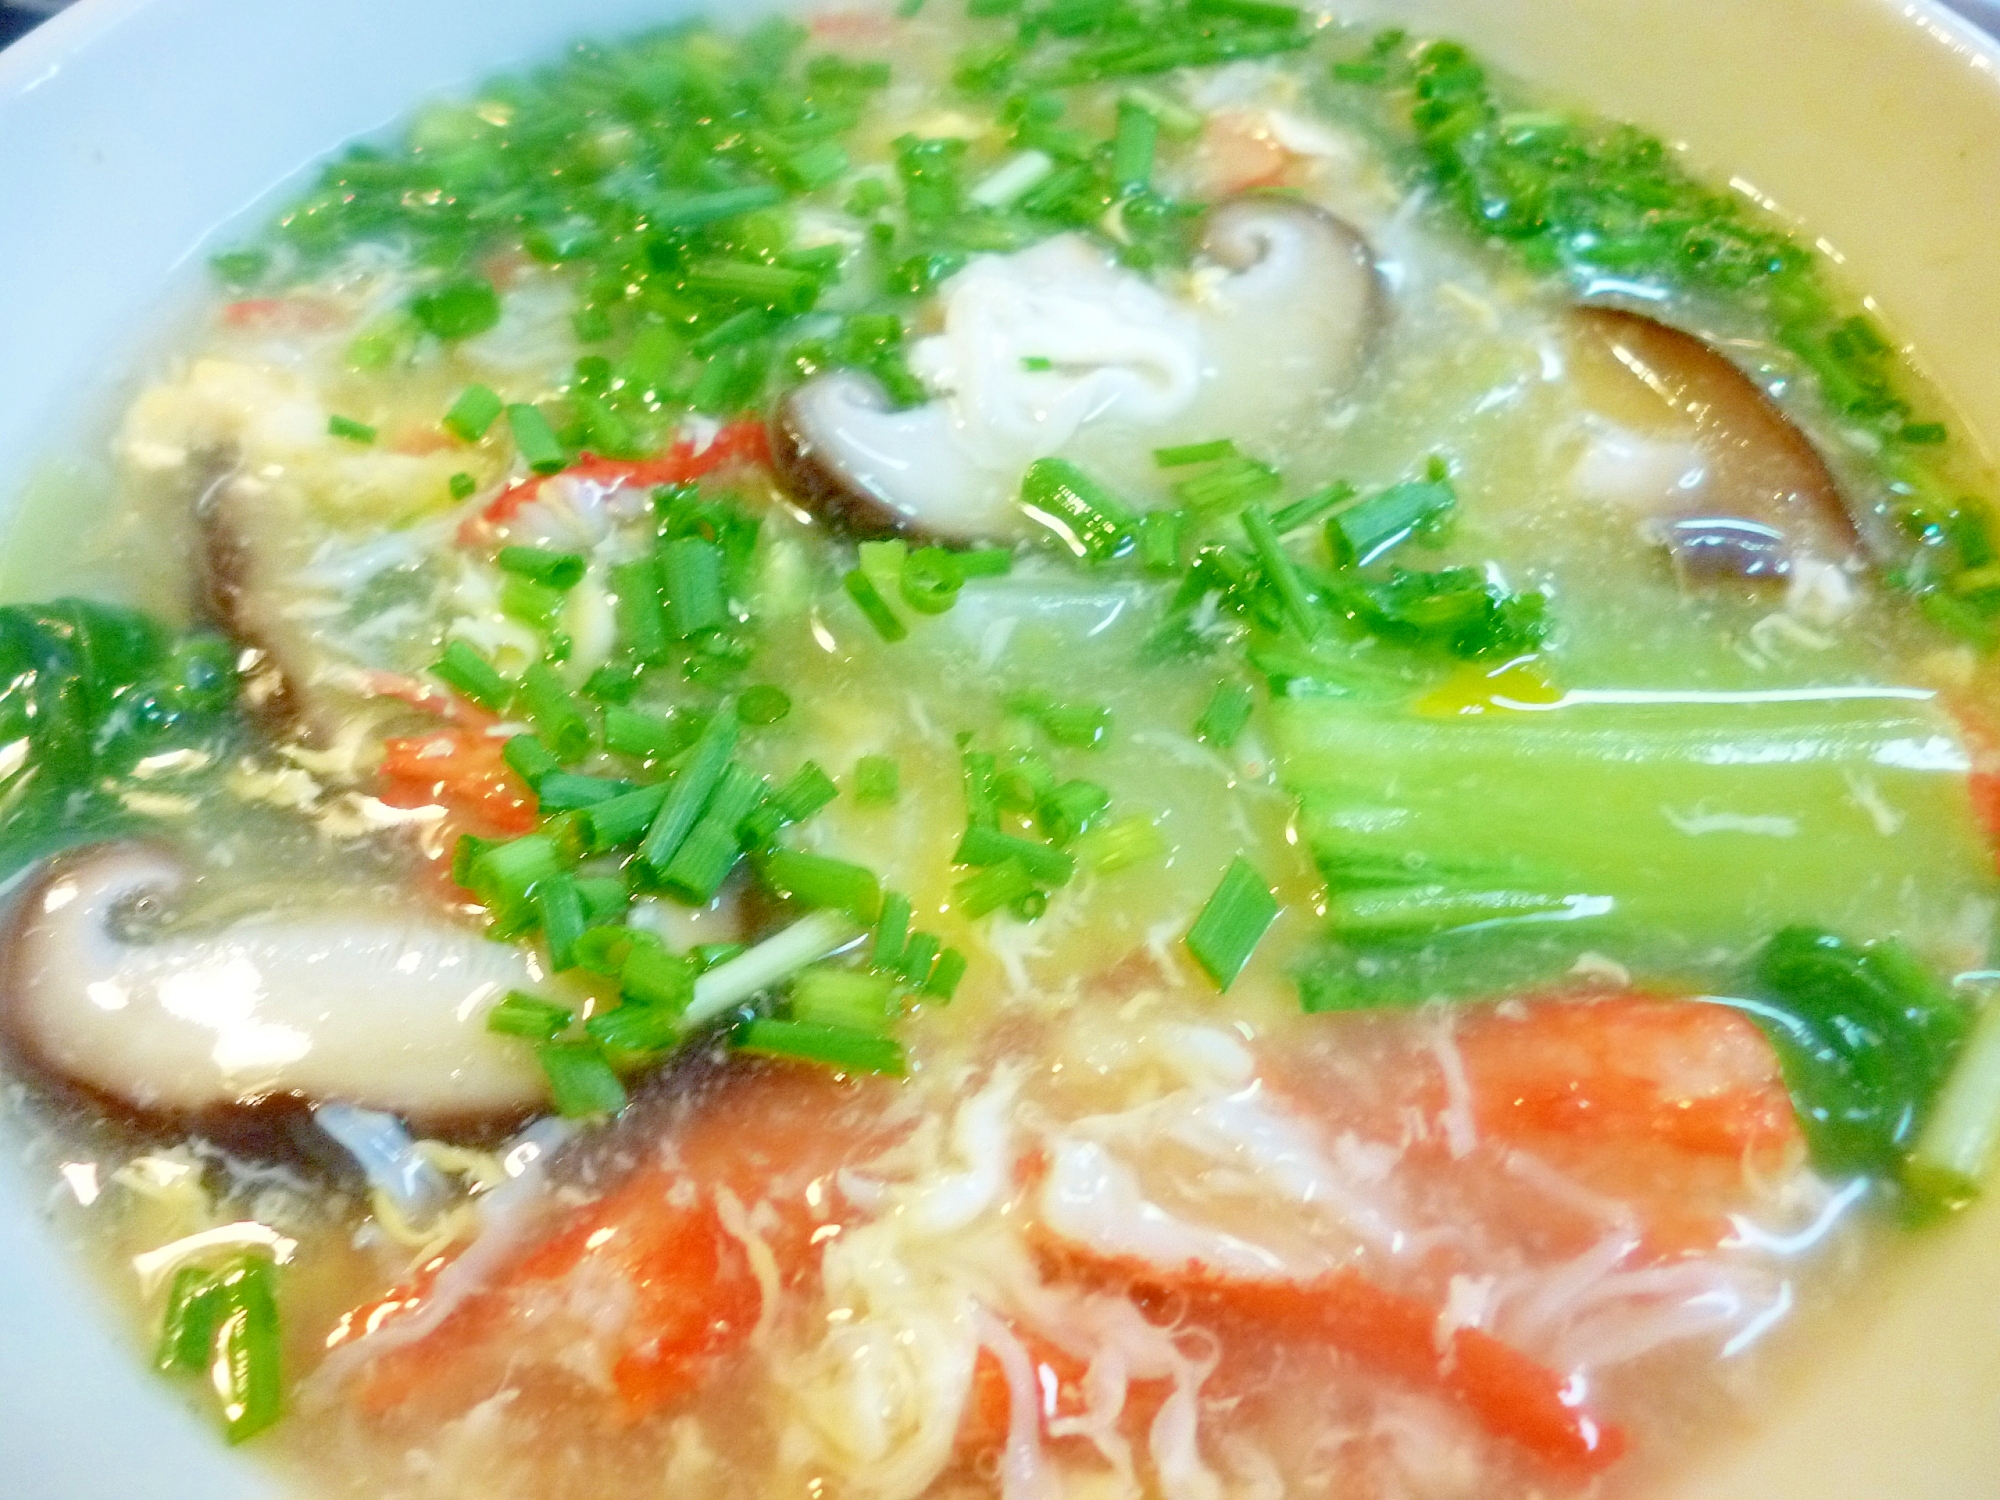 青梗菜・椎茸・蟹のとろみ卵スープ